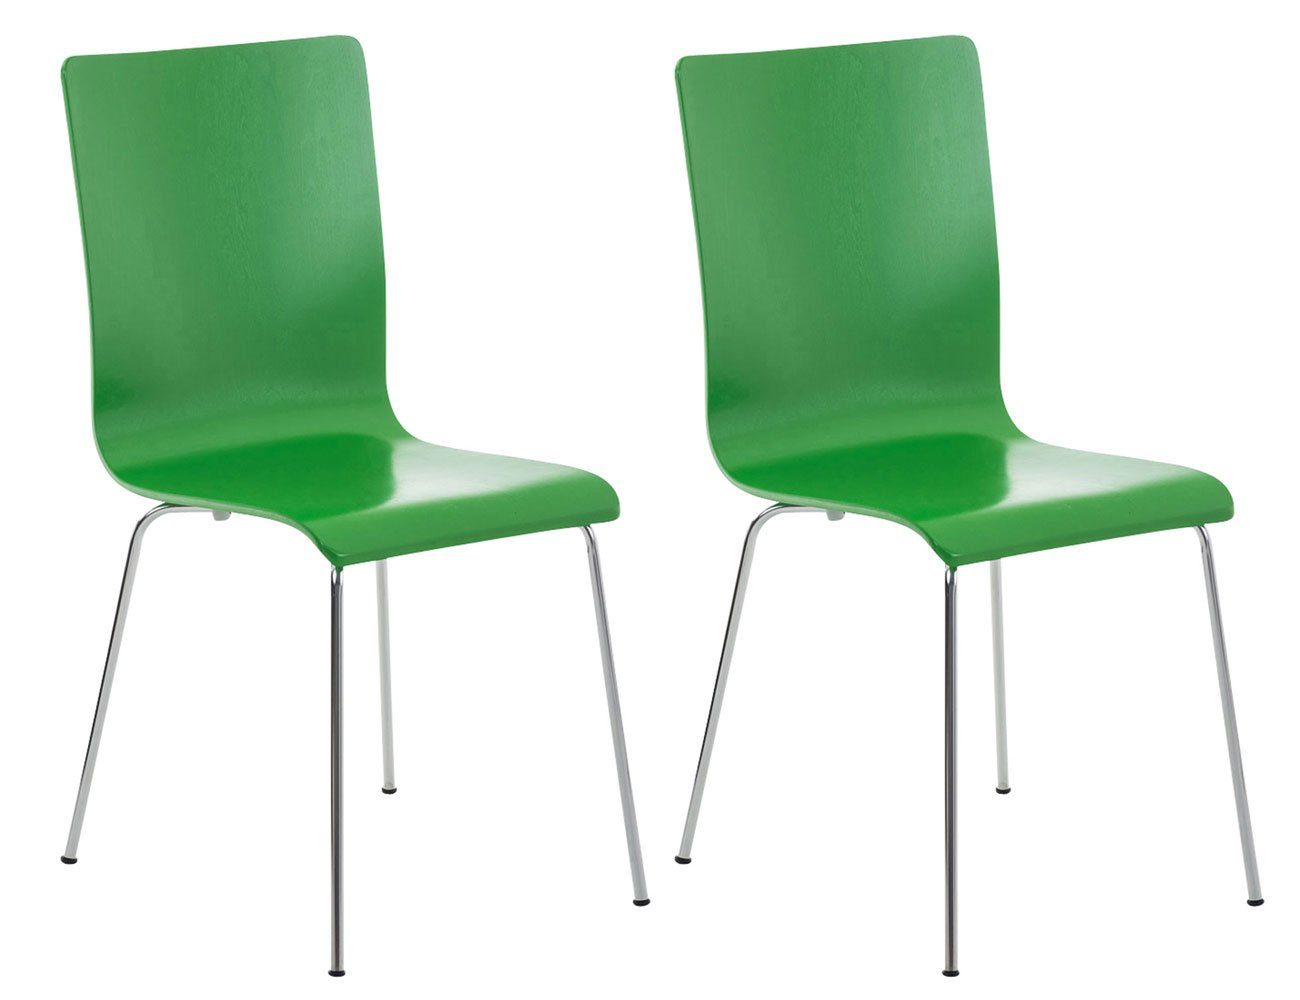 TPFLiving - Besucherstuhl Warteraumstuhl Gestell: St), geformter - 2 Sitzfläche: Konferenzstuhl Metall mit Messestuhl, chrom Holz Peppo - - grün ergonomisch Sitzfläche (Besprechungsstuhl